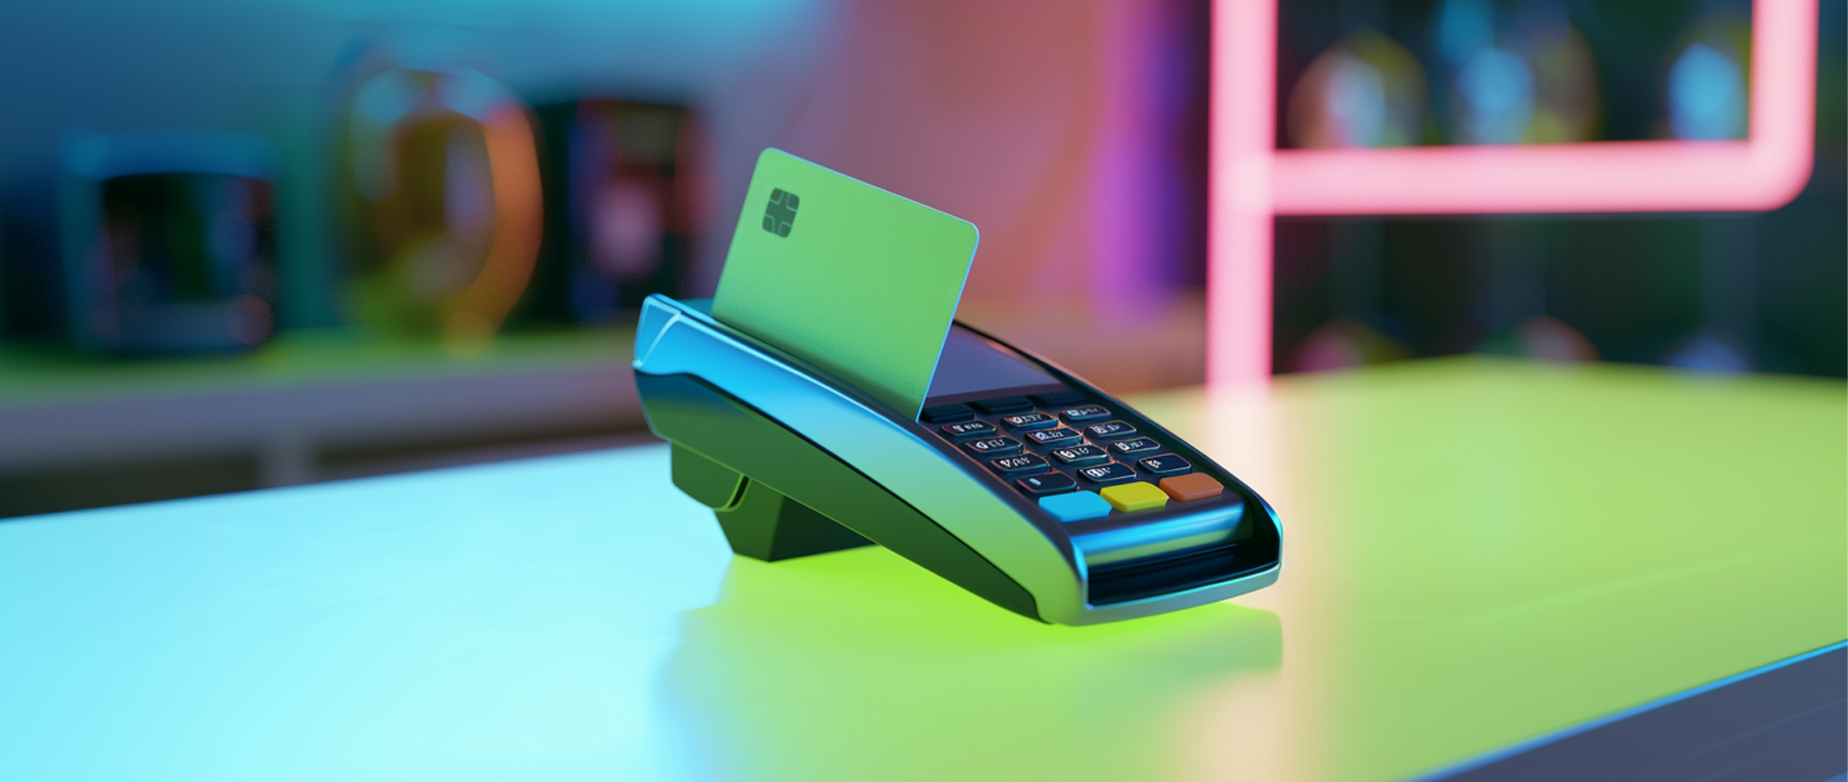 a credit card swiping through a card reader machine